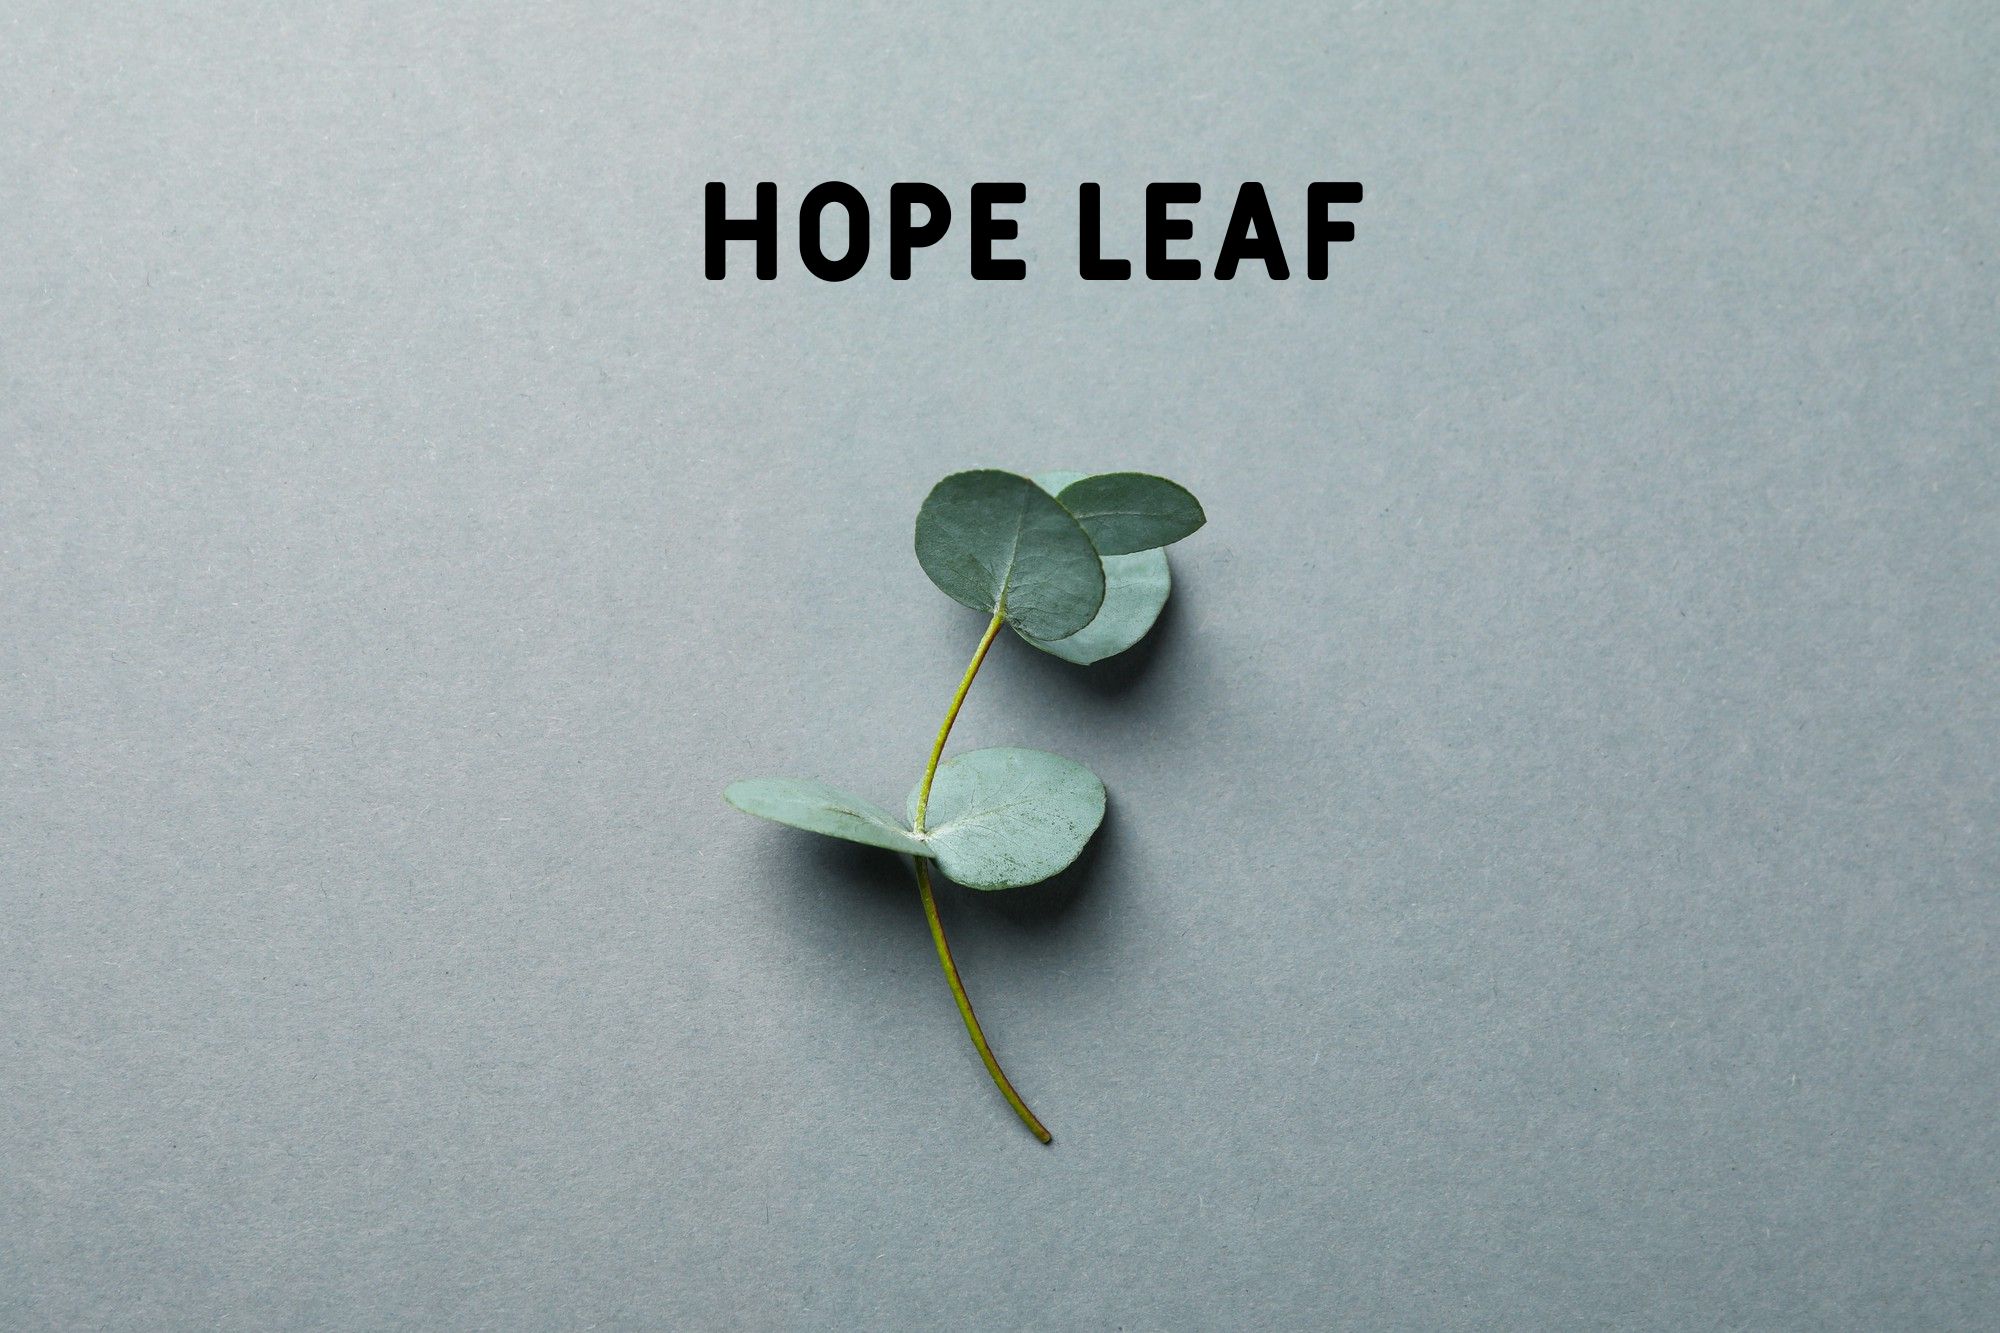 Hope leaf